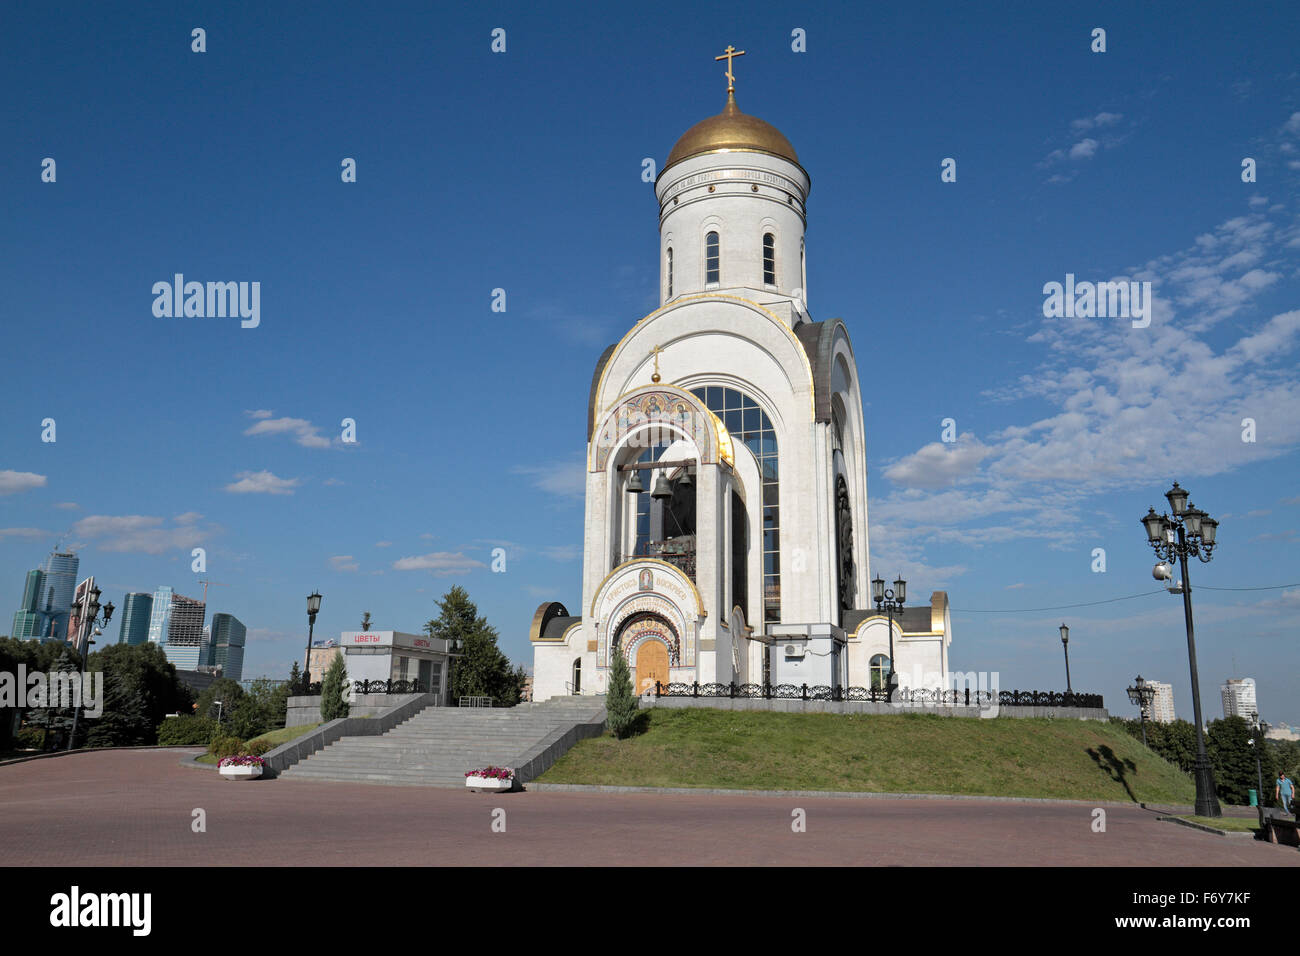 La Iglesia de San Jorge el Victorioso, parque Pobedy (Parque Victoria), Moscú, Rusia. Foto de stock